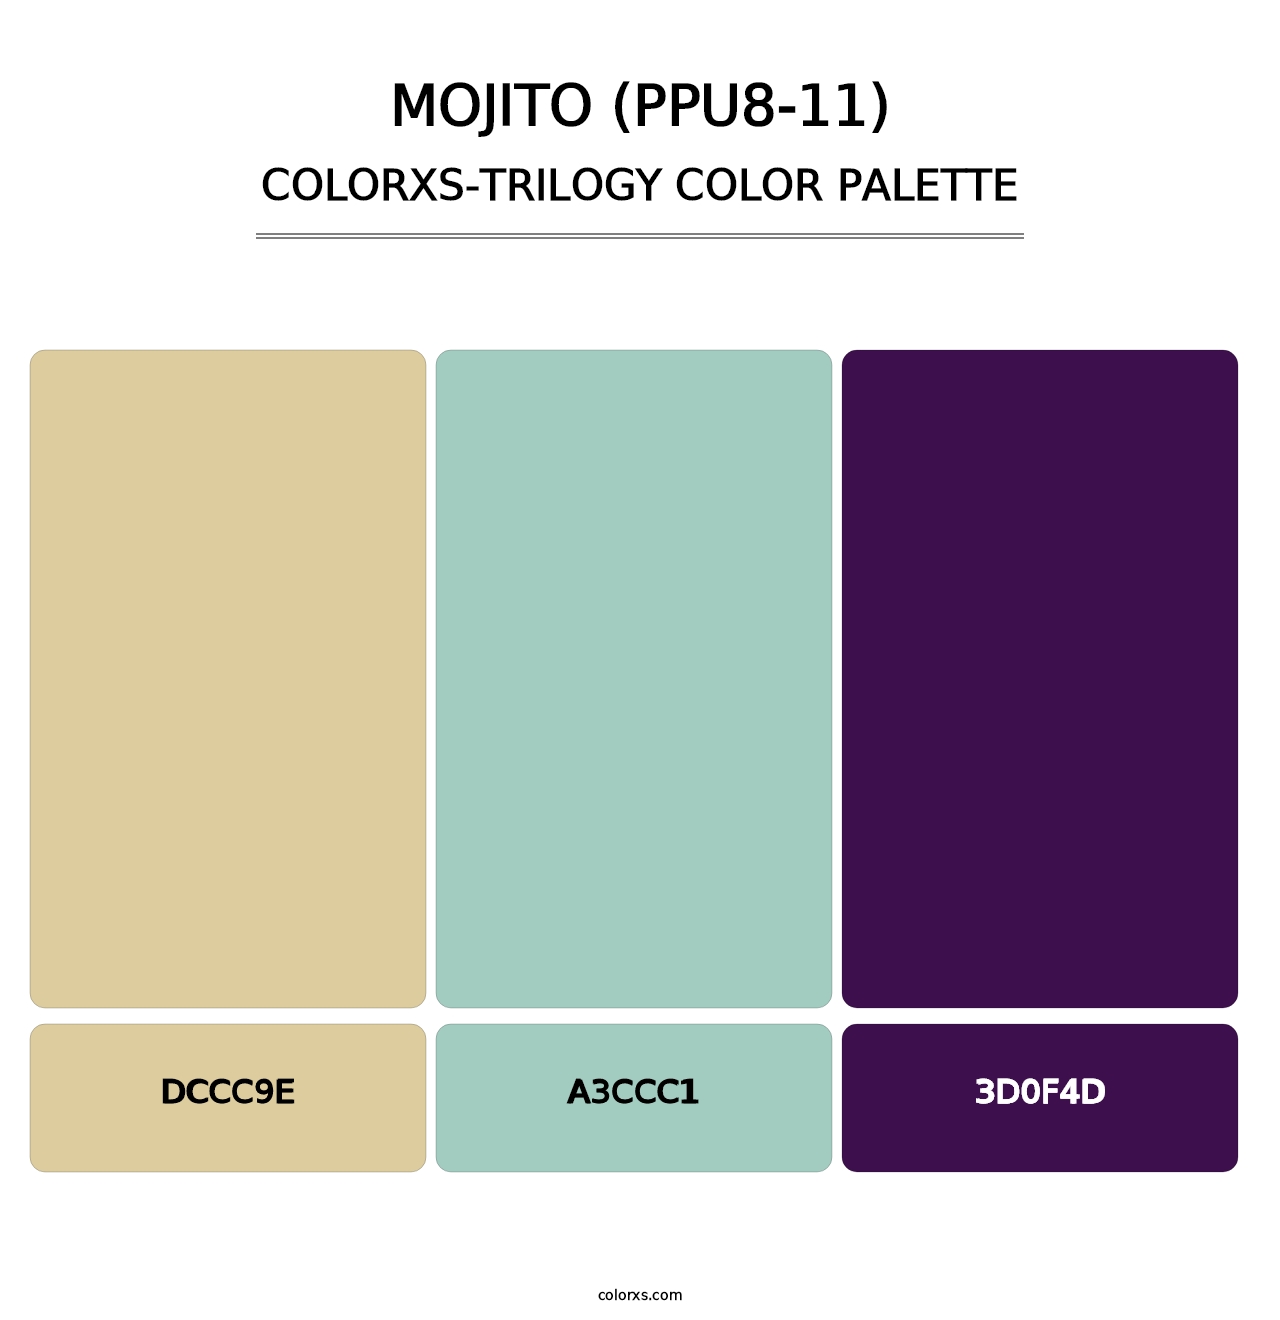 Mojito (PPU8-11) - Colorxs Trilogy Palette